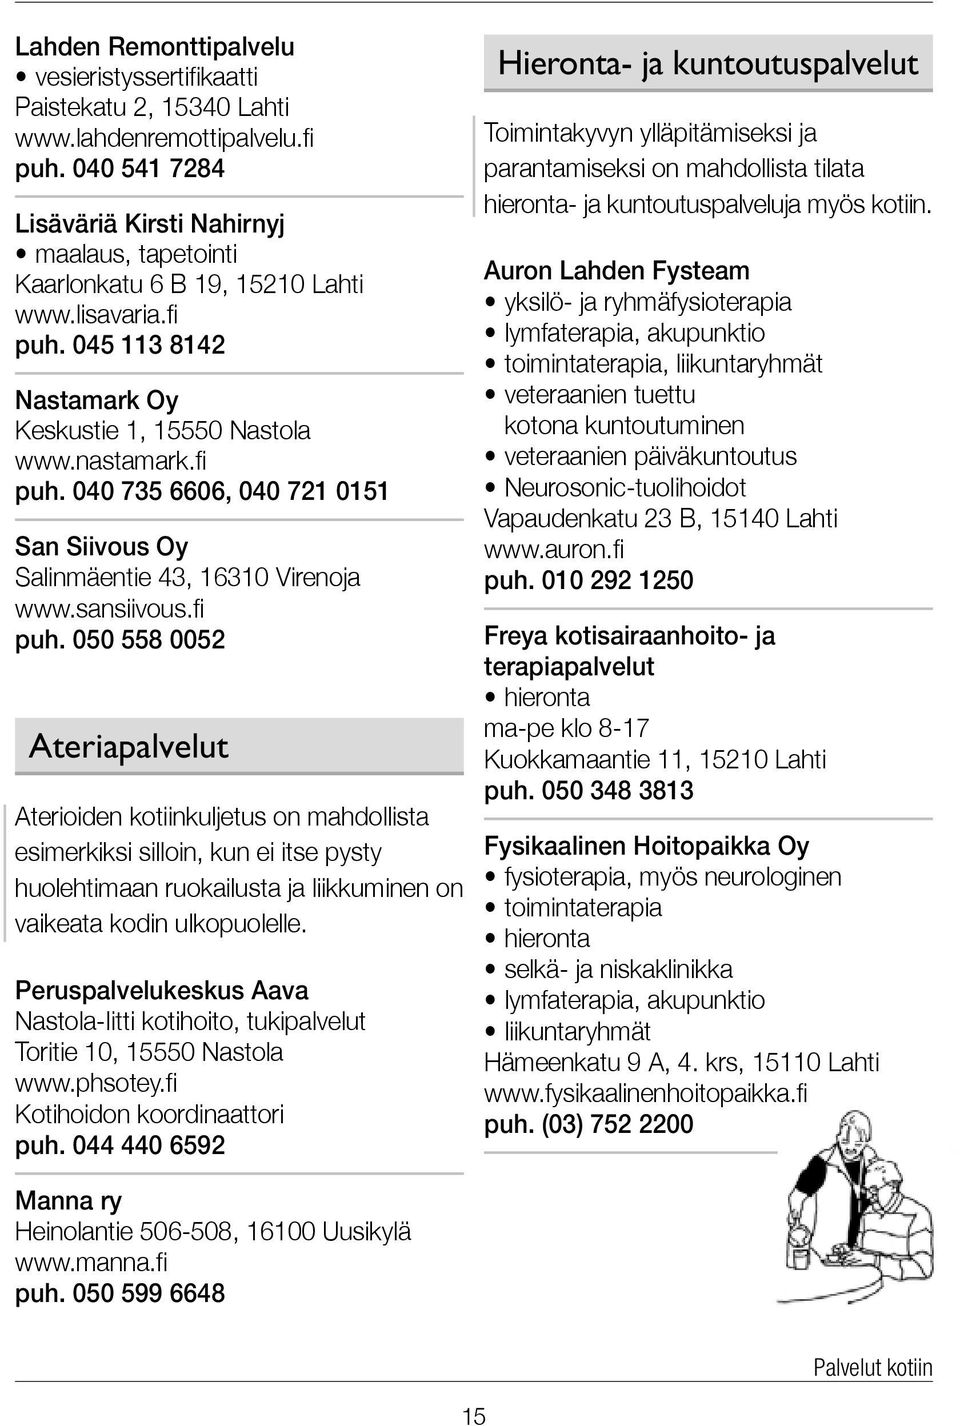 sansiivous.fi puh. 050 558 0052 Ateriapalvelut Aterioiden kotiinkuljetus on mahdollista esimerkiksi silloin, kun ei itse pysty huolehtimaan ruokailusta ja liikkuminen on vaikeata kodin ulkopuolelle.